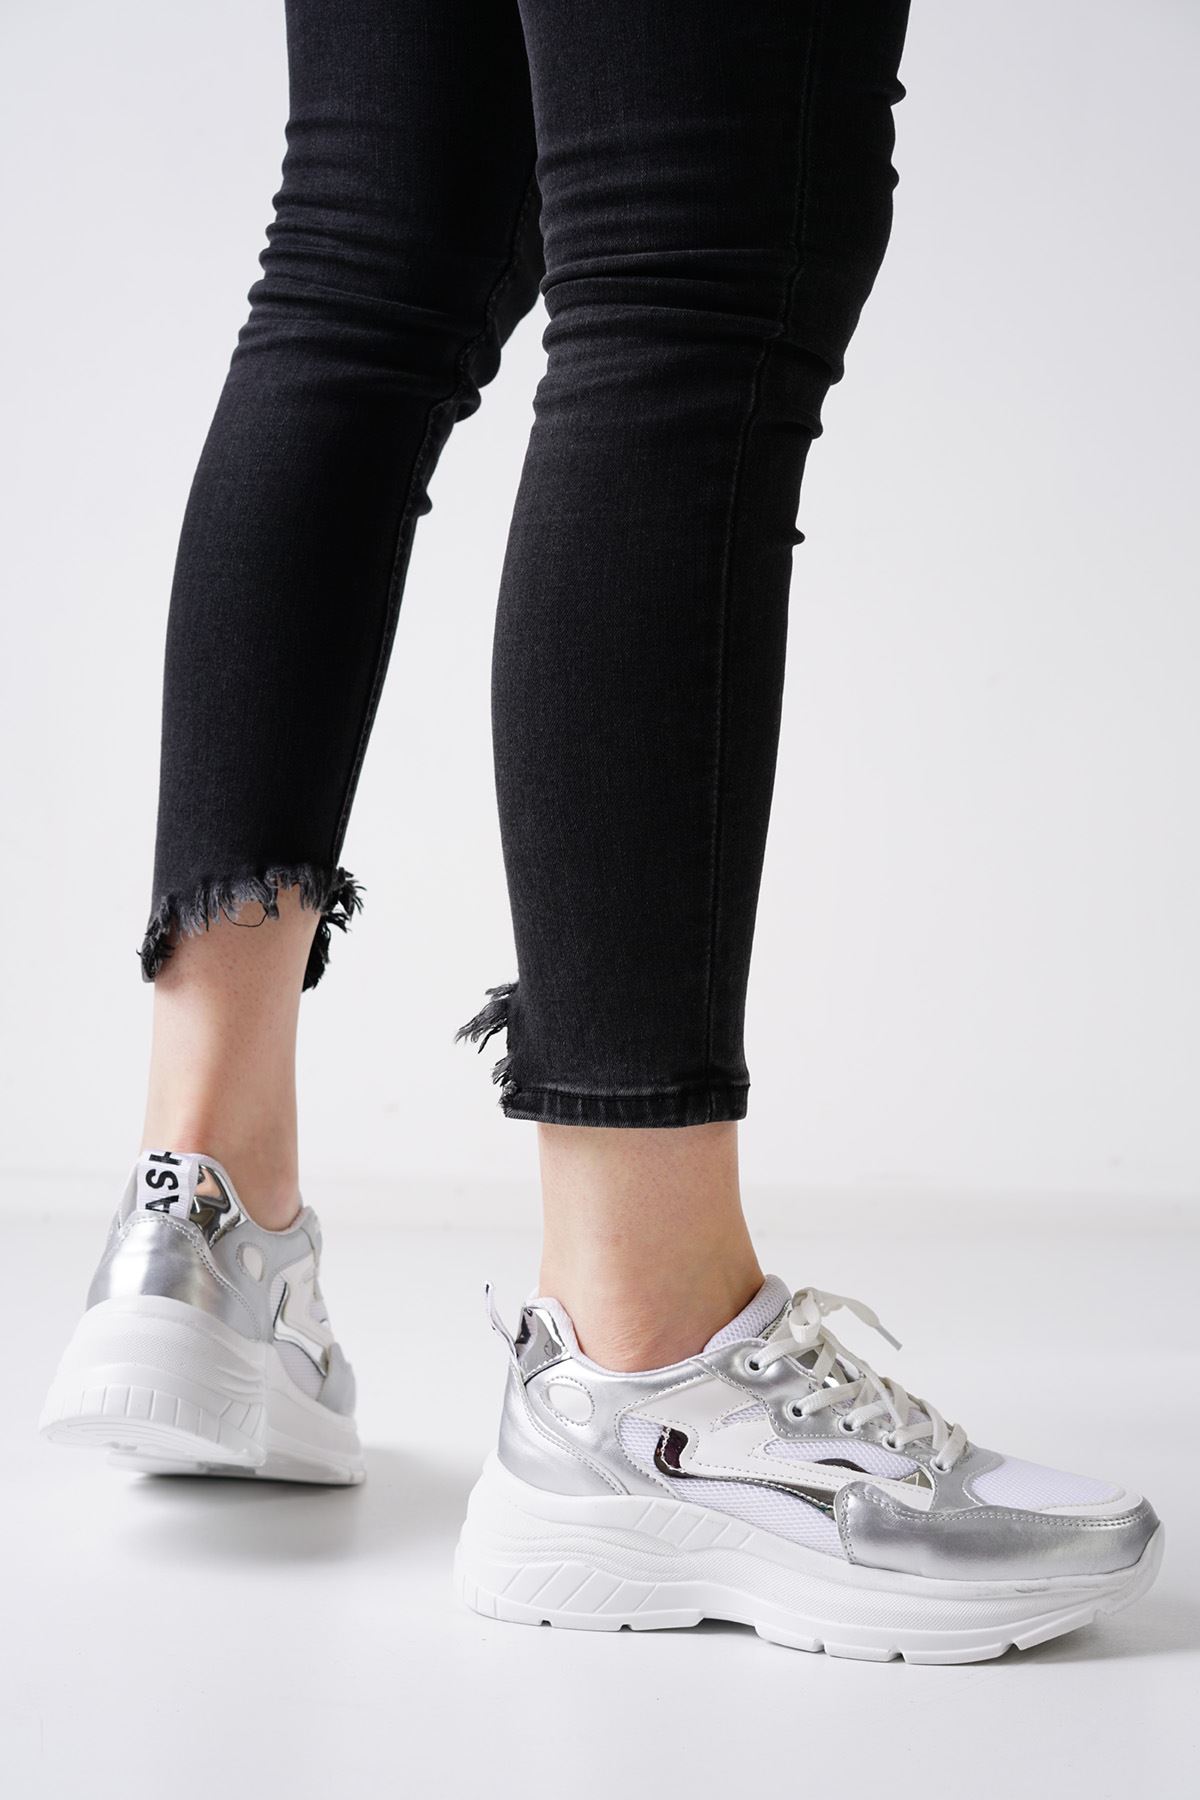 Gilly Beyaz Gümüş Kadın Spor Ayakkabı